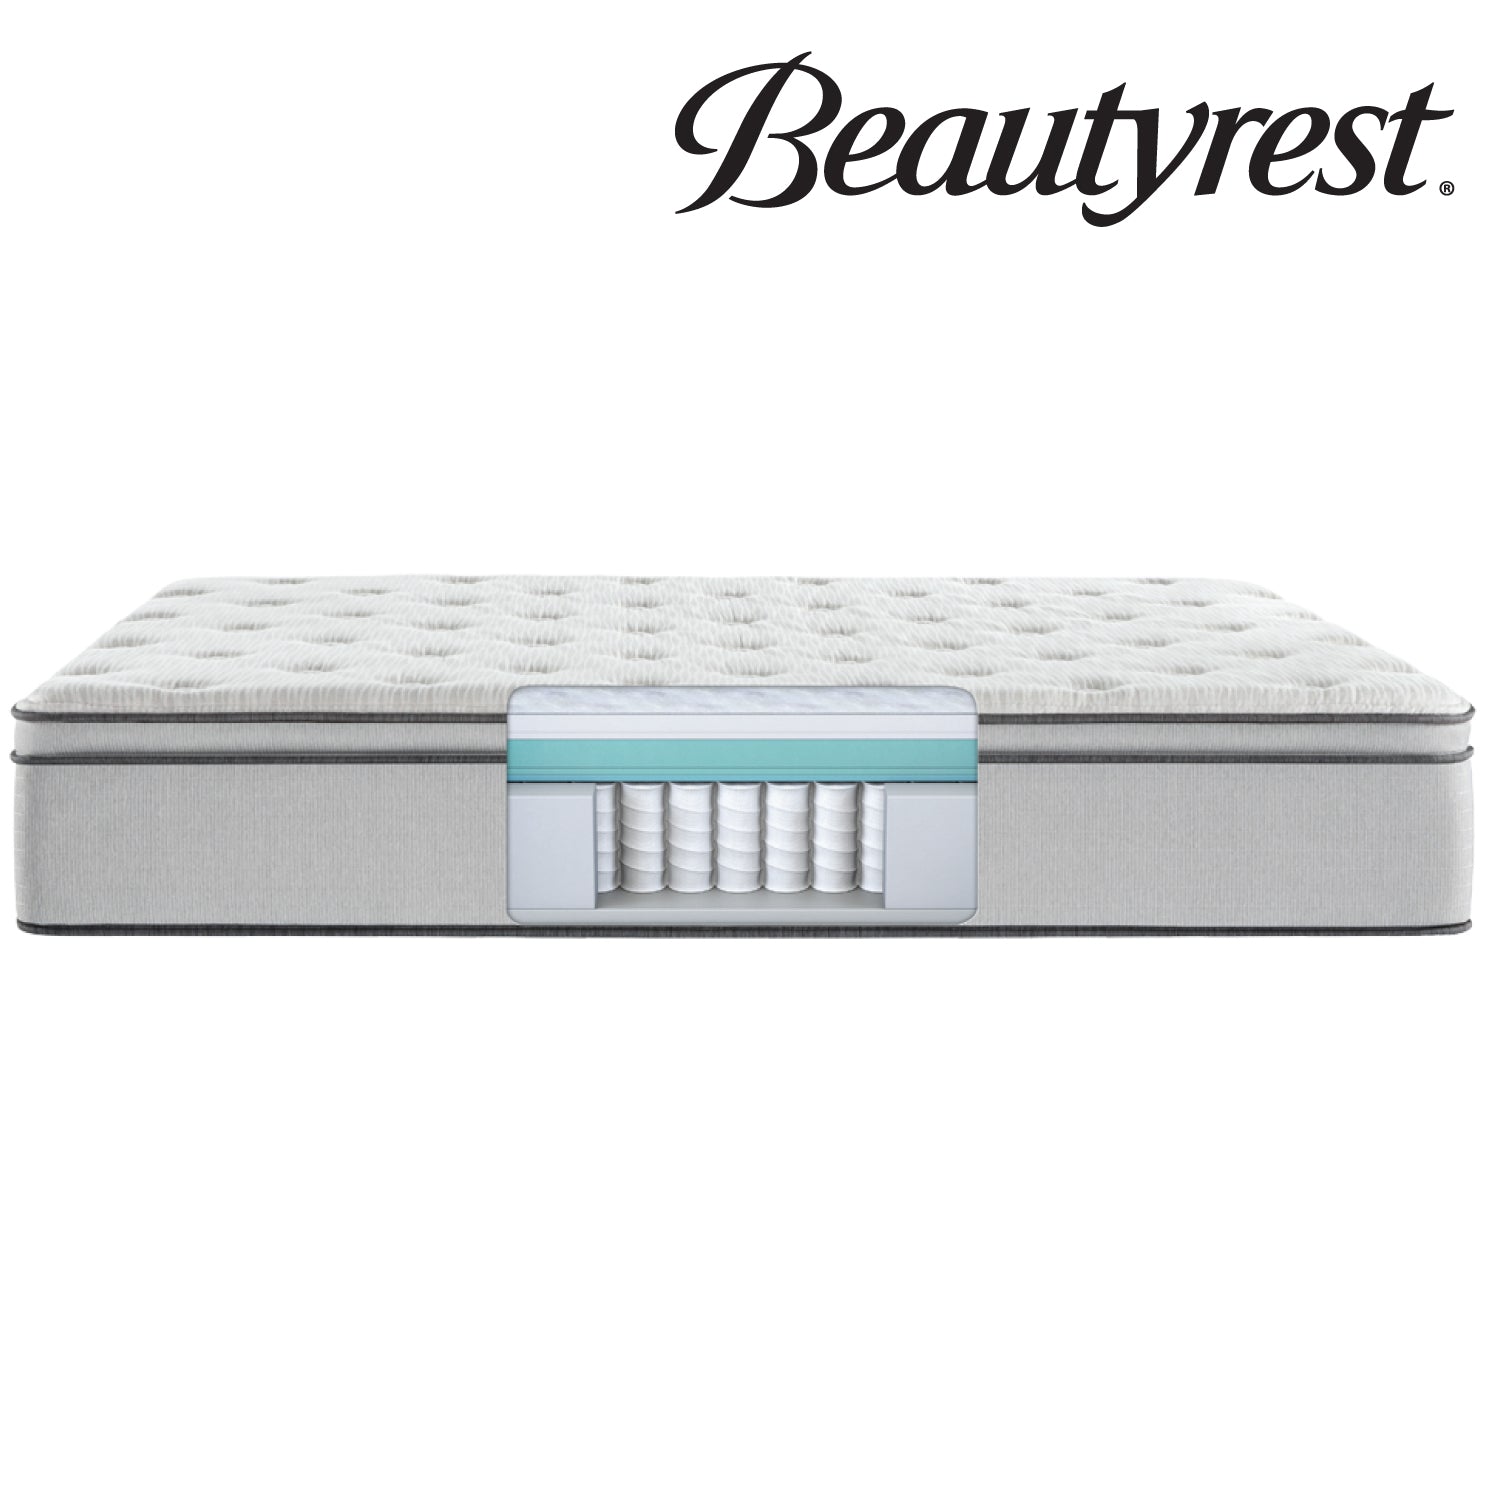 Beautyrest 13.5" BR800 Plush Pillow Top Mattress